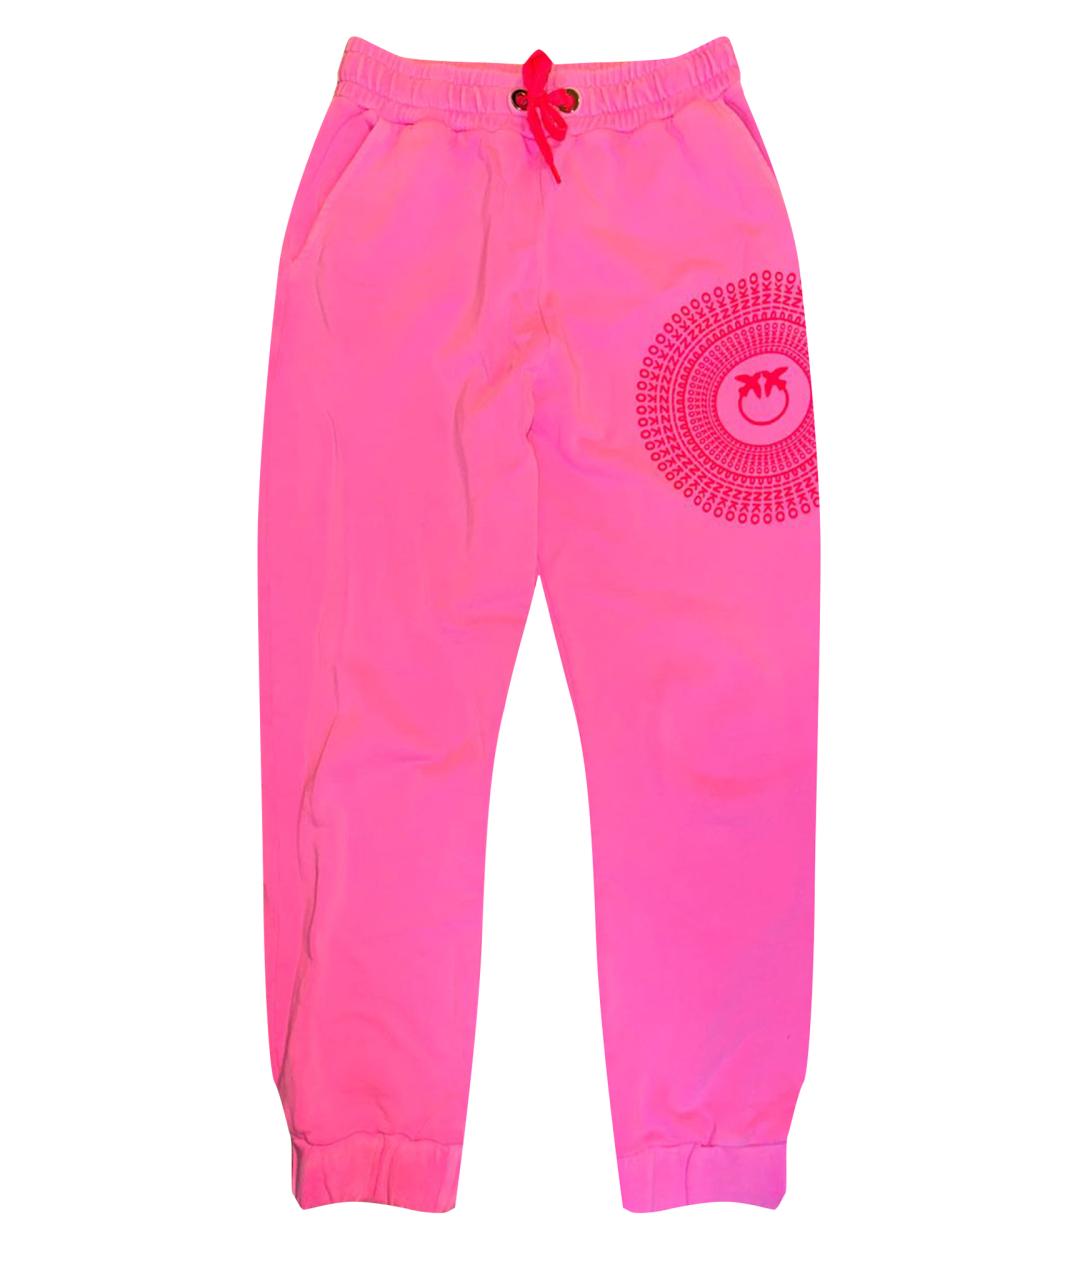 PINKO Розовые хлопковые спортивные брюки и шорты, фото 1